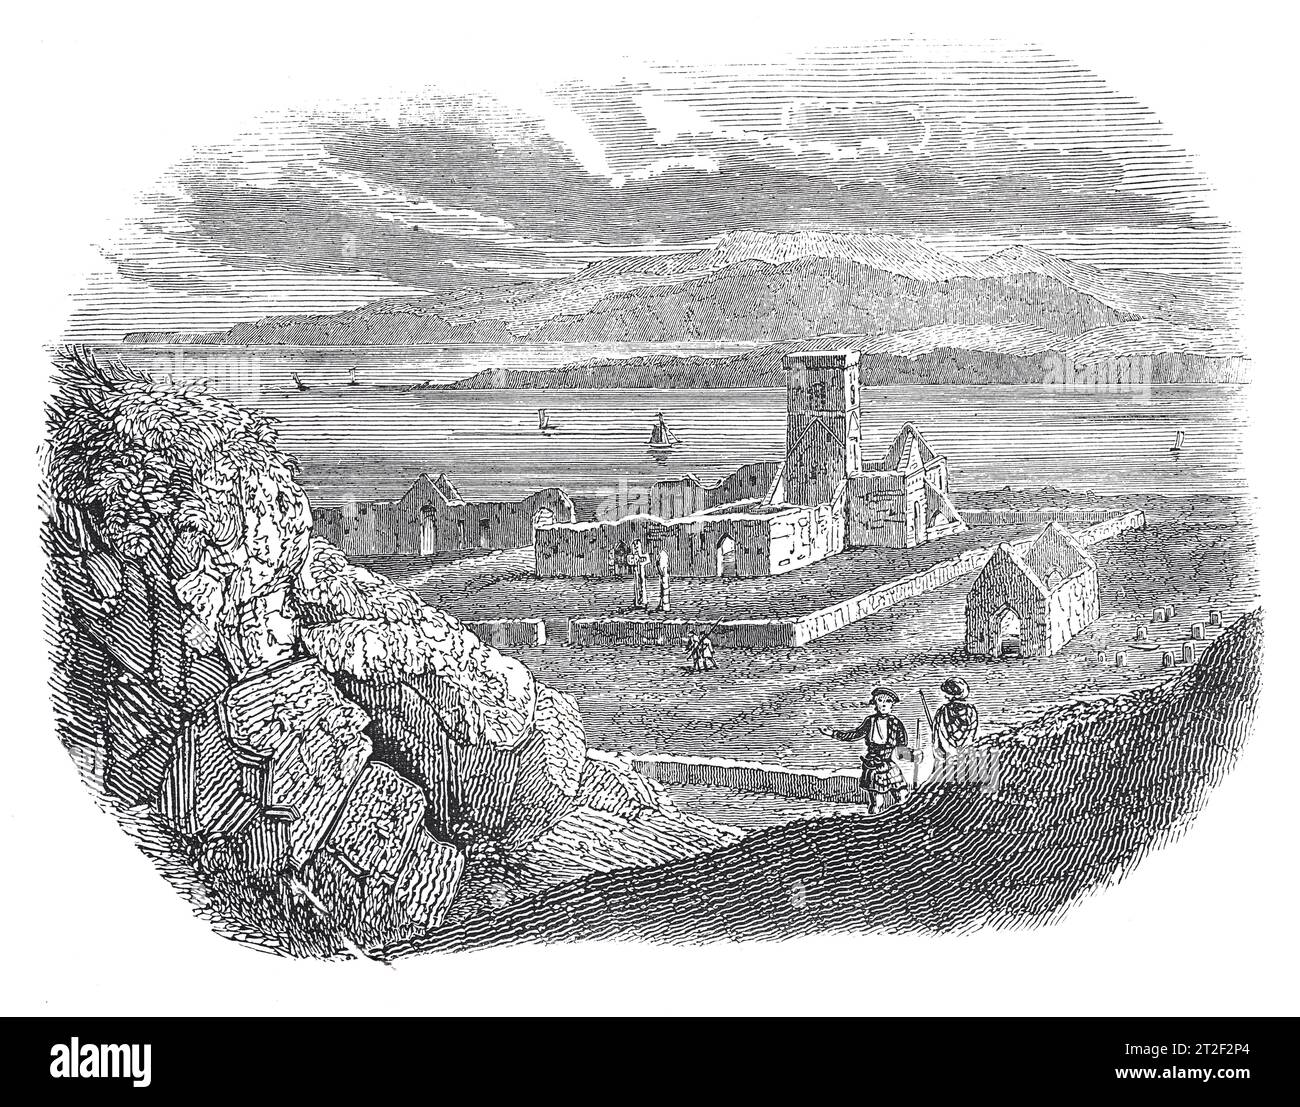 Les ruines du monastère de Iona, sur I-Columb-Kill. Illustration en noir et blanc de la 'Vieille Angleterre' publiée par James Sangster en 1860. Banque D'Images